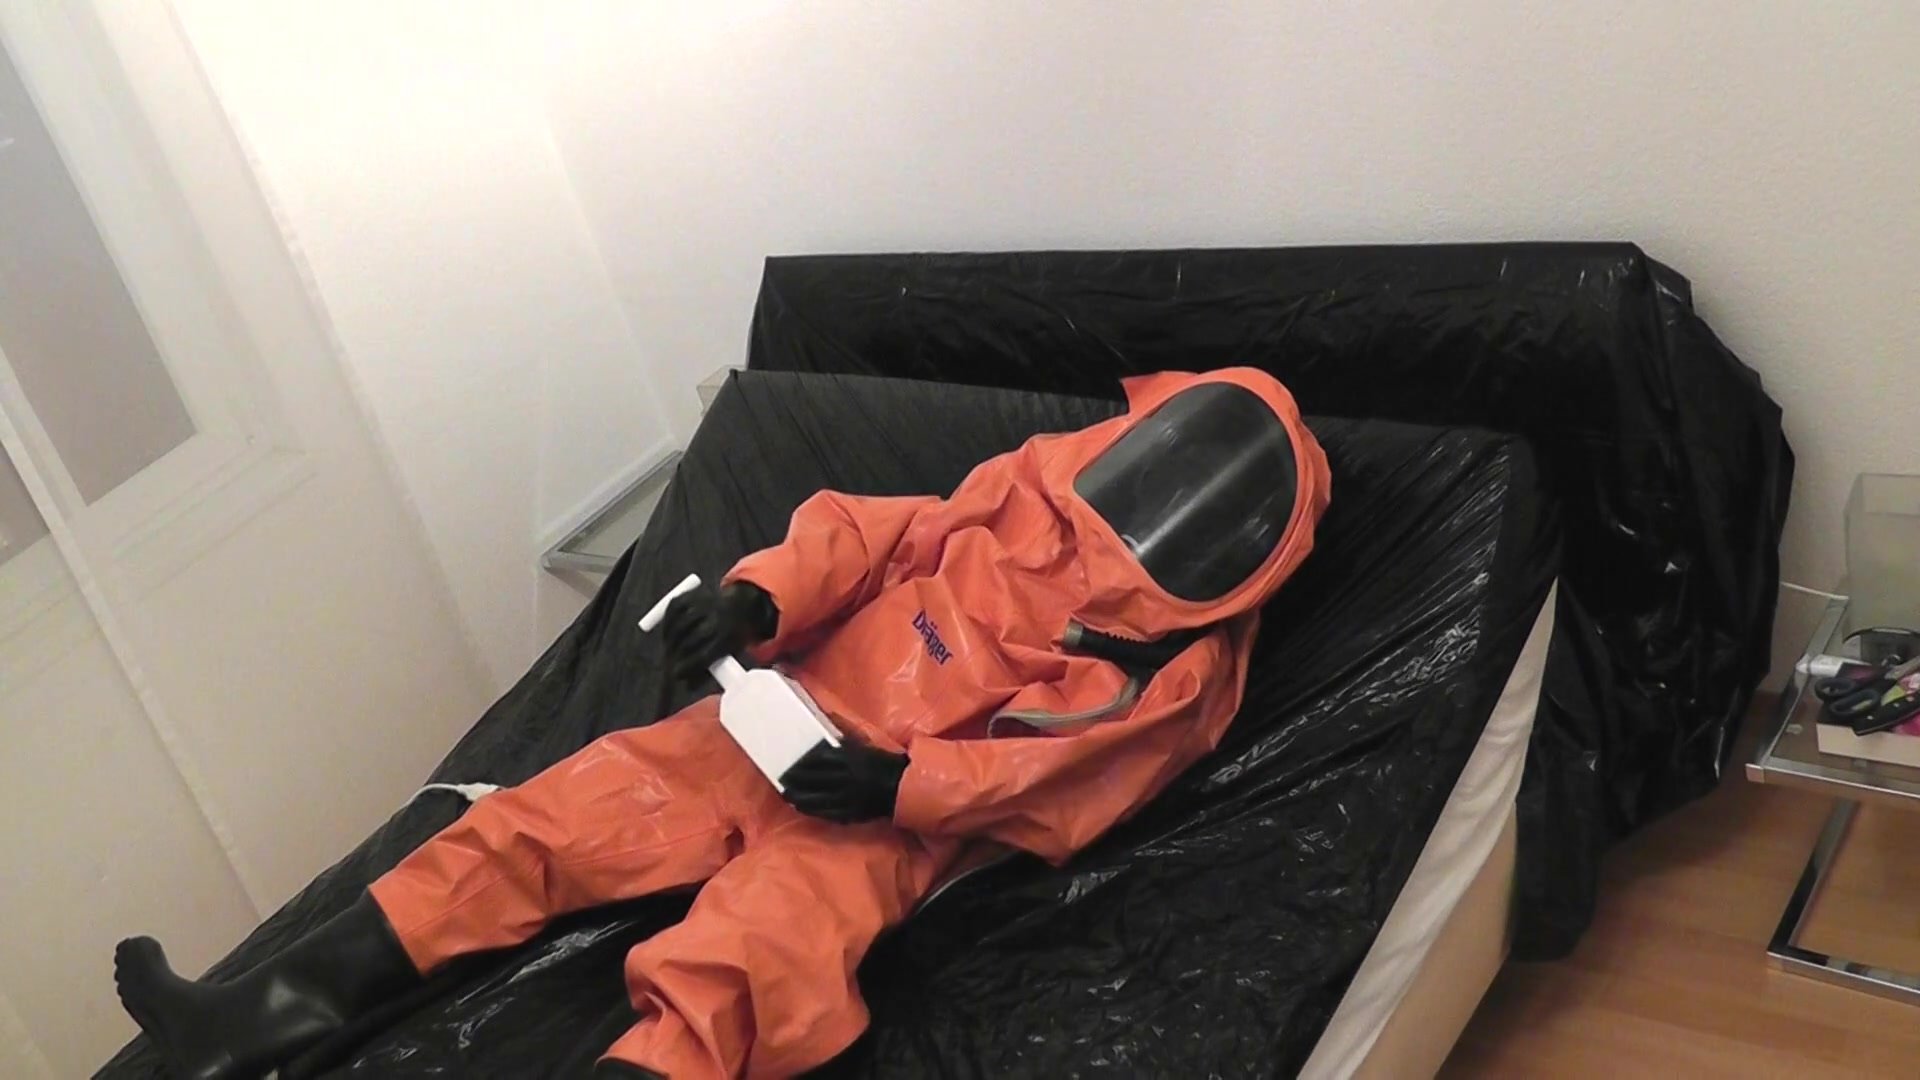 In Full Rubber + orange Draeger Hazmat Suit